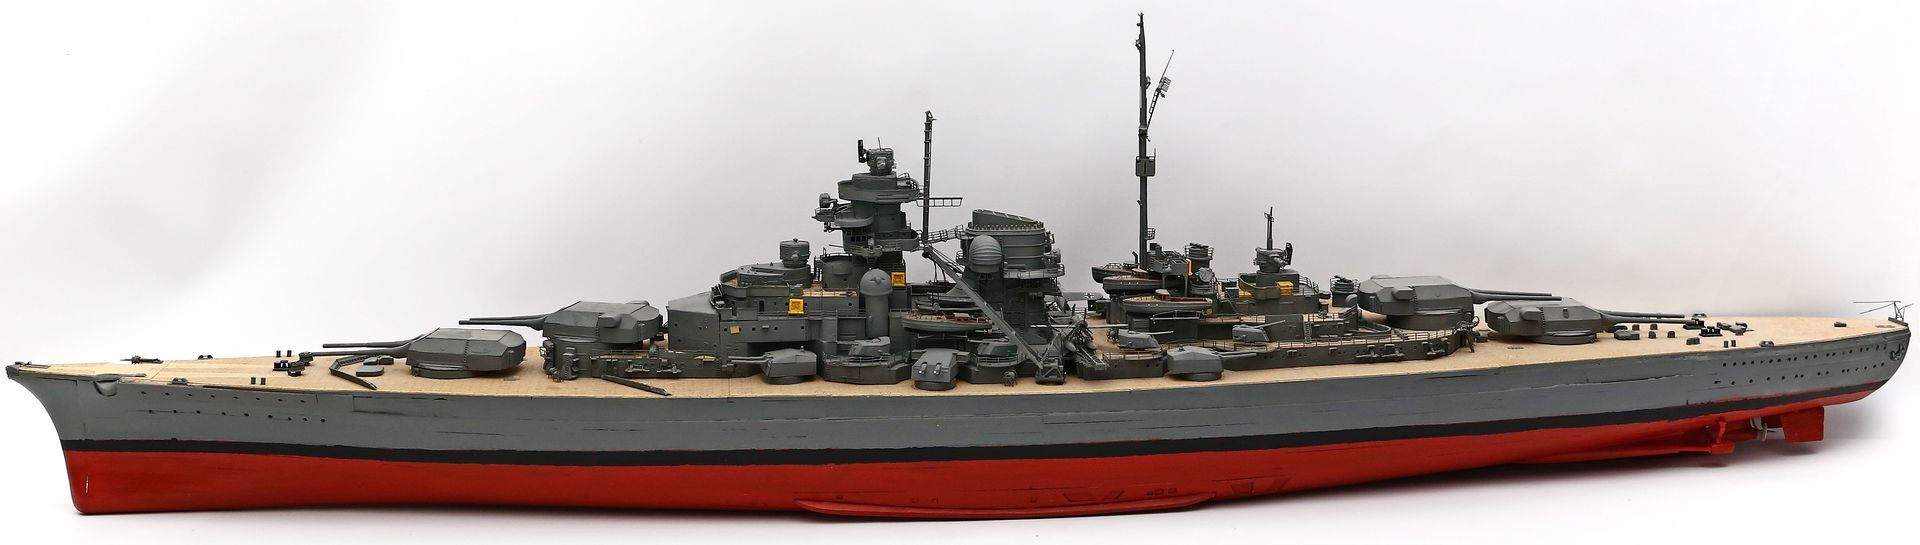 Modellschiff "Bismarck".